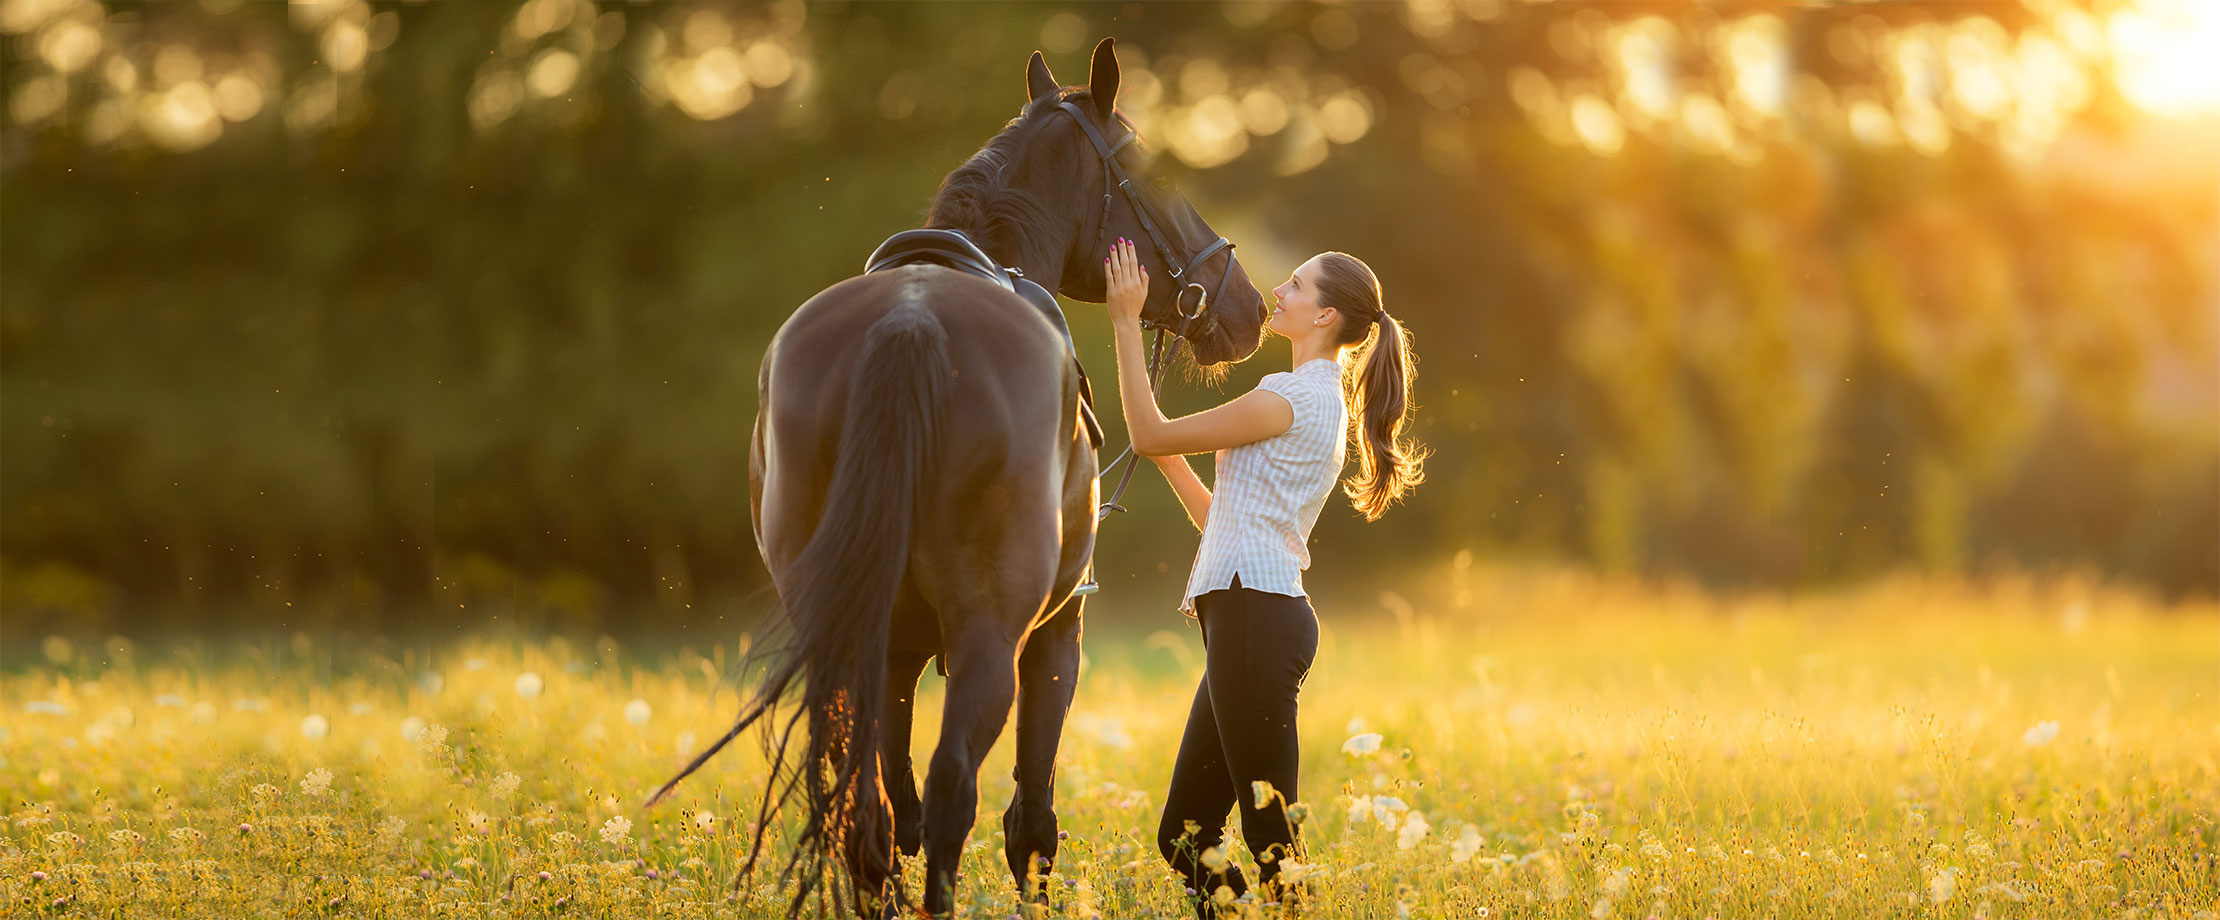 Eine junge Frau steht am frühen Abend mit ihrem schwarzen Pferd auf einer Wiese. 